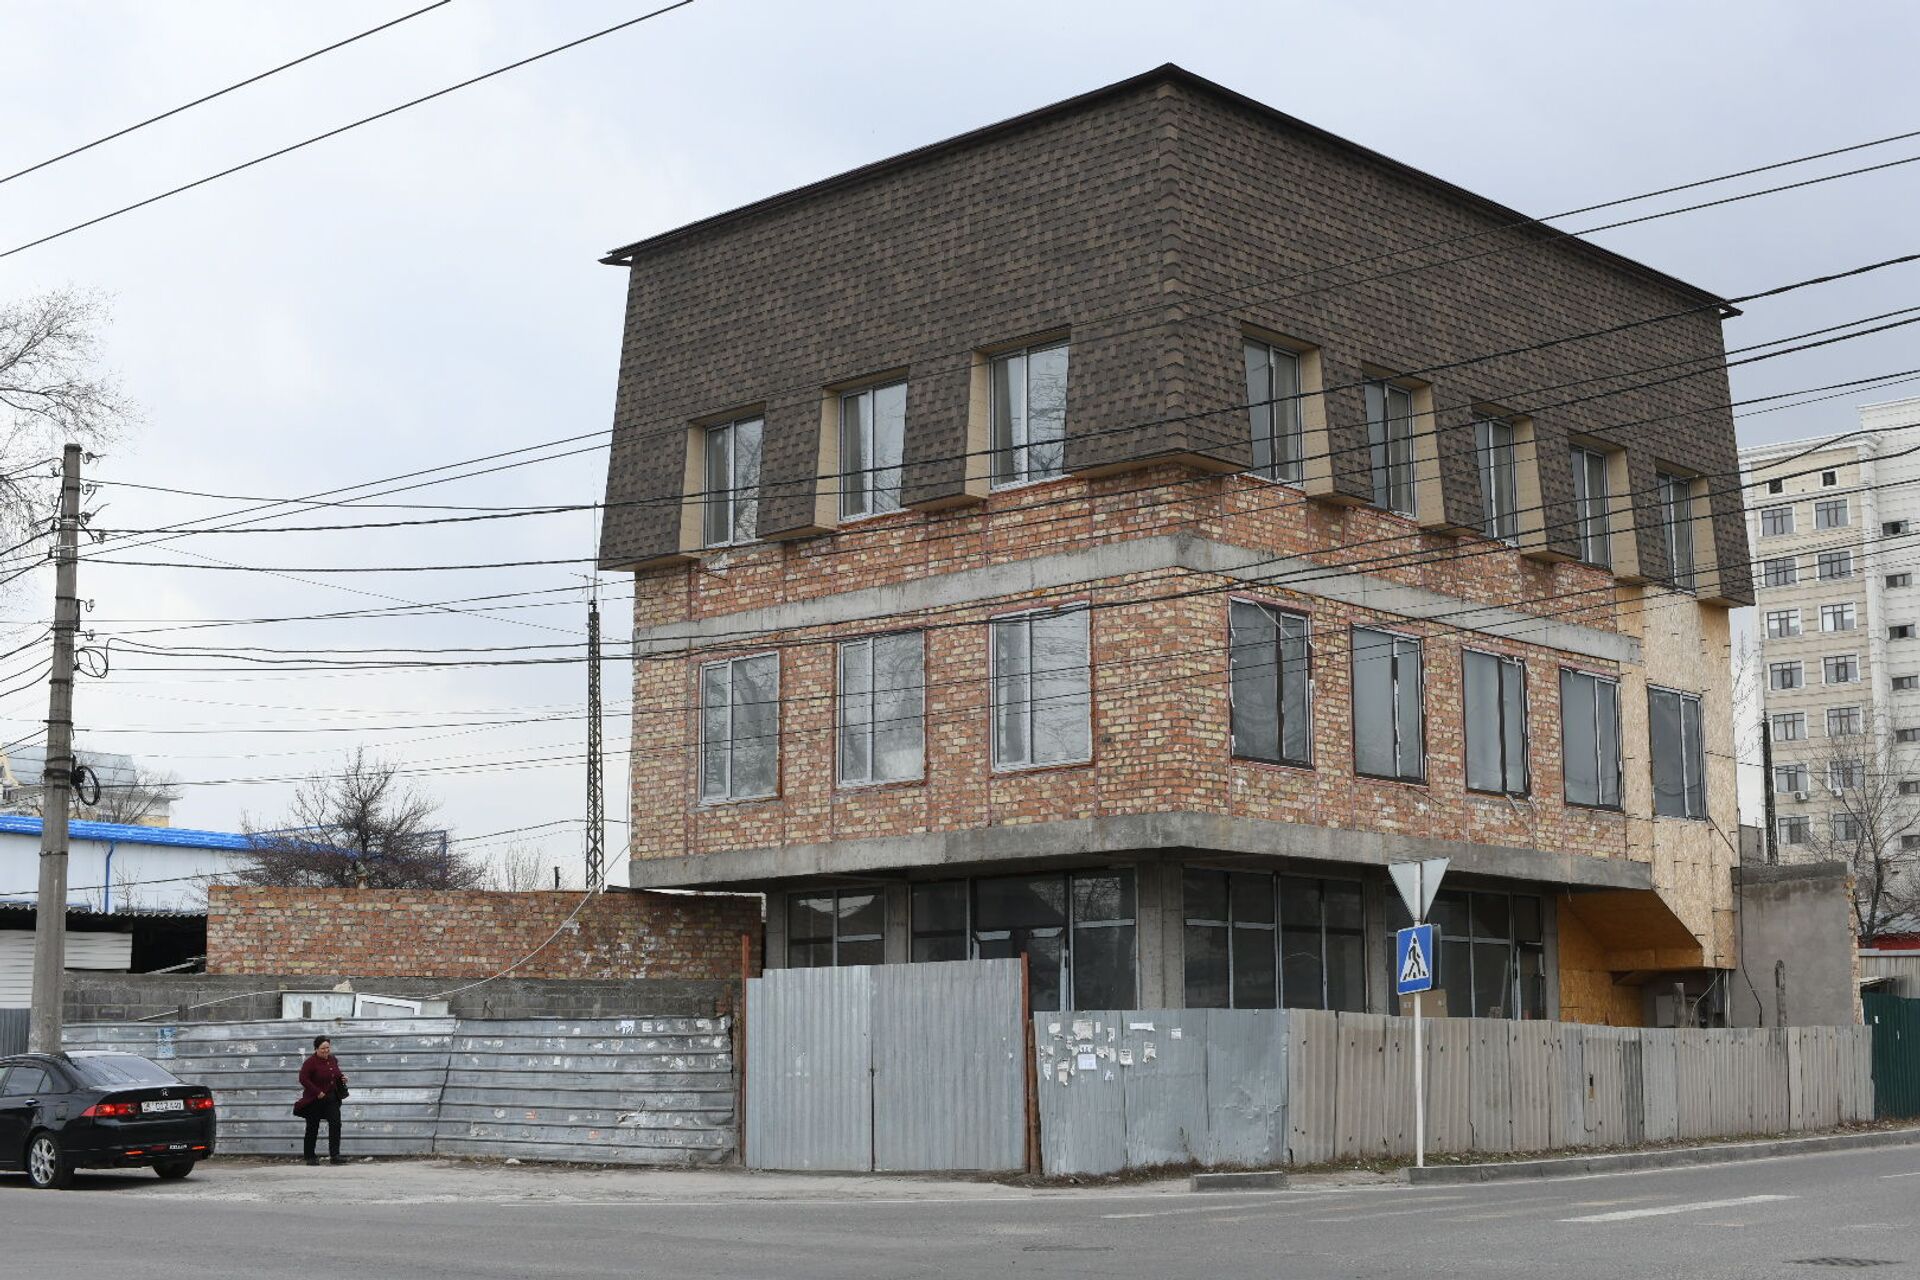 Бишкекчан удивило странное здание. Как оно на самом деле выглядит — фото - Sputnik Кыргызстан, 1920, 23.03.2021